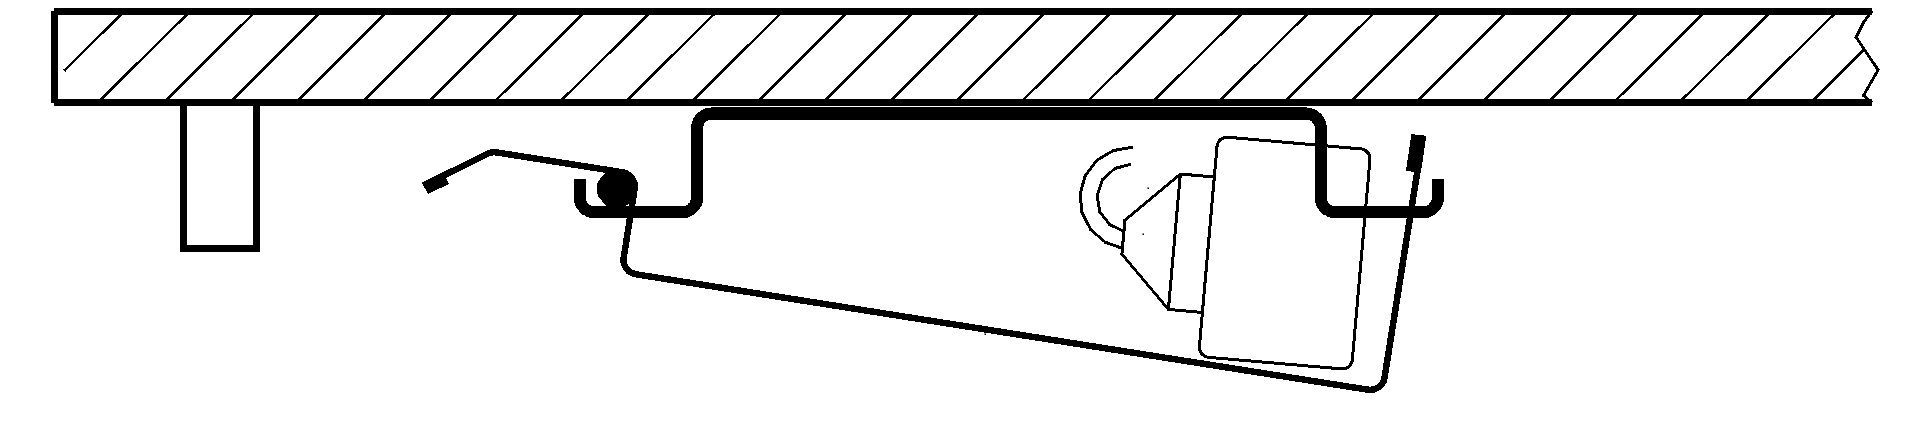 Kabelspirale,Tisch mit Kabelkanal,höhenverstellbarer Schreibtisch,höhenverstellbare Tische von Hammerbacher